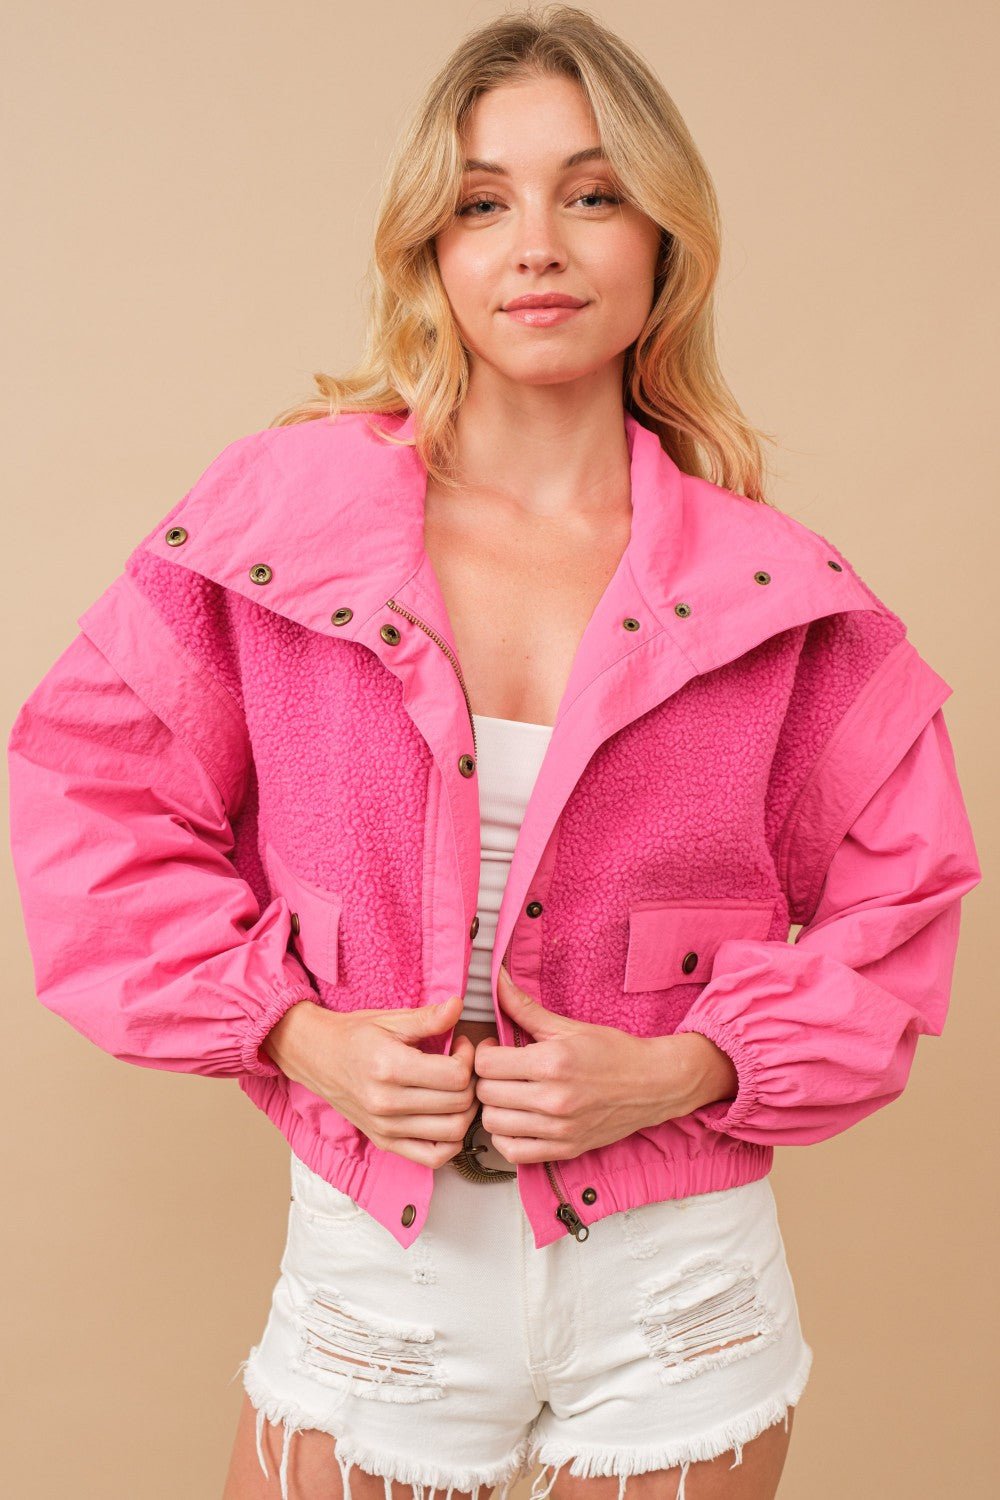 Like A Lil' Teddy Bear Windbreaker Jacket- Hot Pink